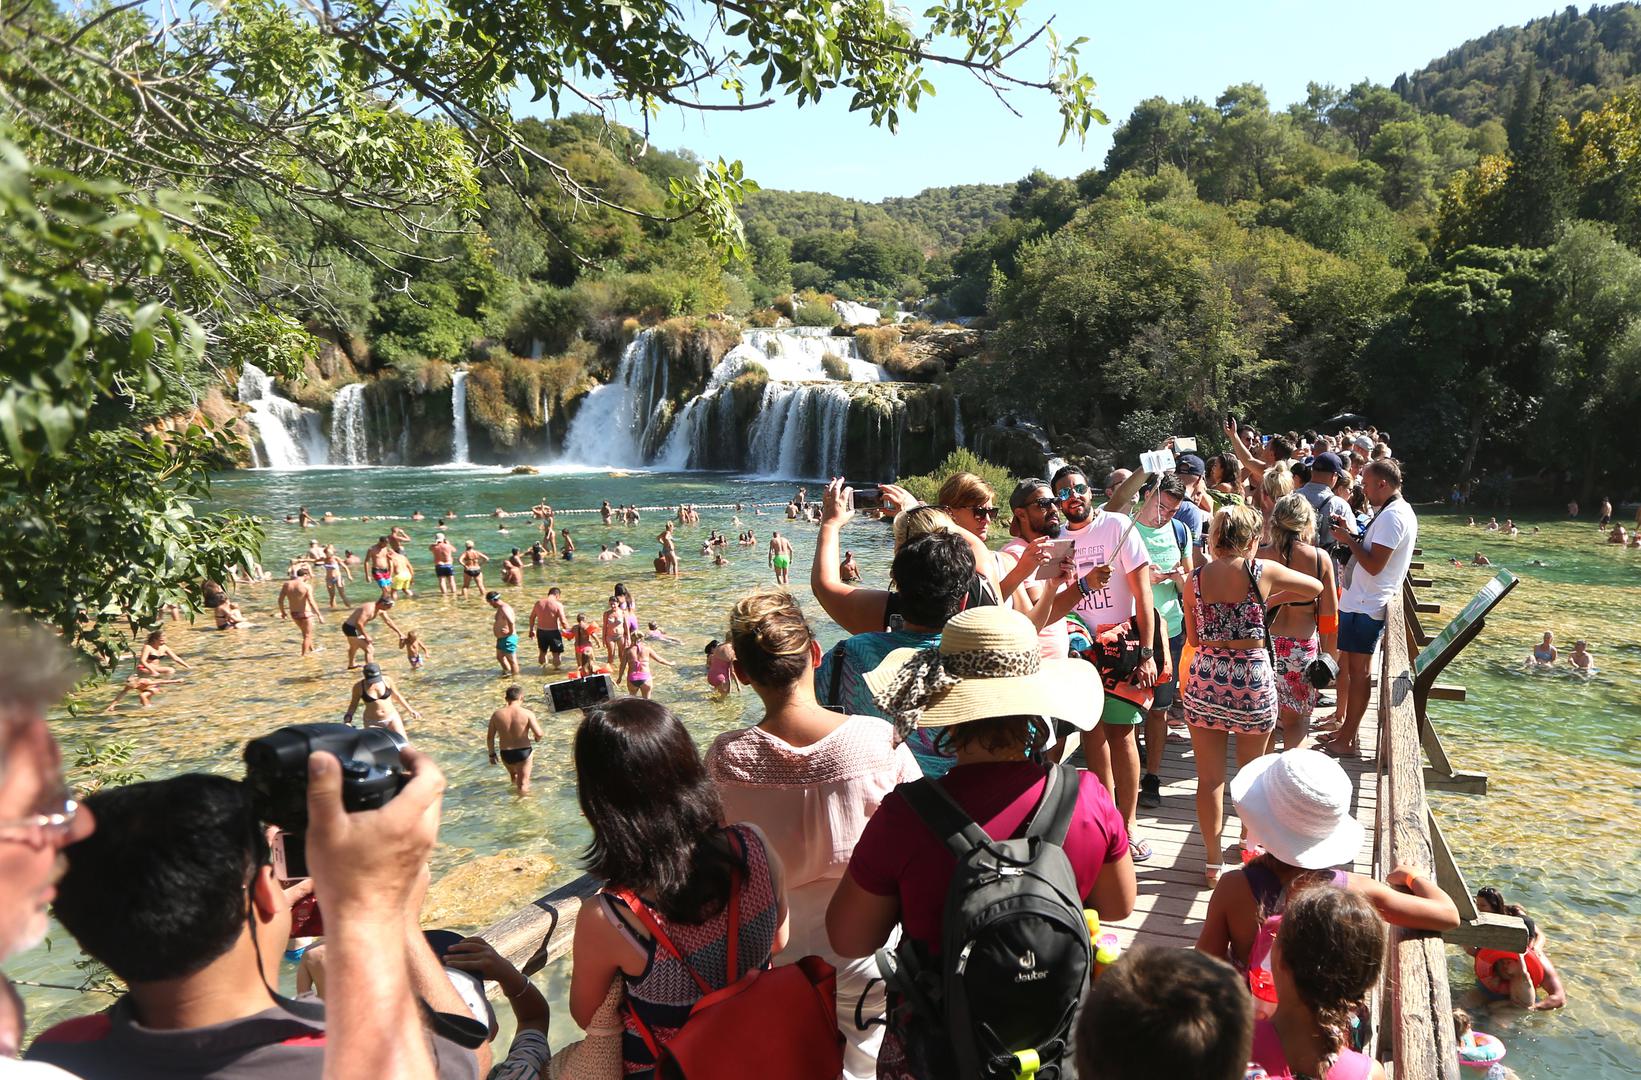 Mnoštvo domaćih i stranih gostiju nakon obilaska NP Krke i slapova Krke potraži osvježenje upravo u rijeci Krki